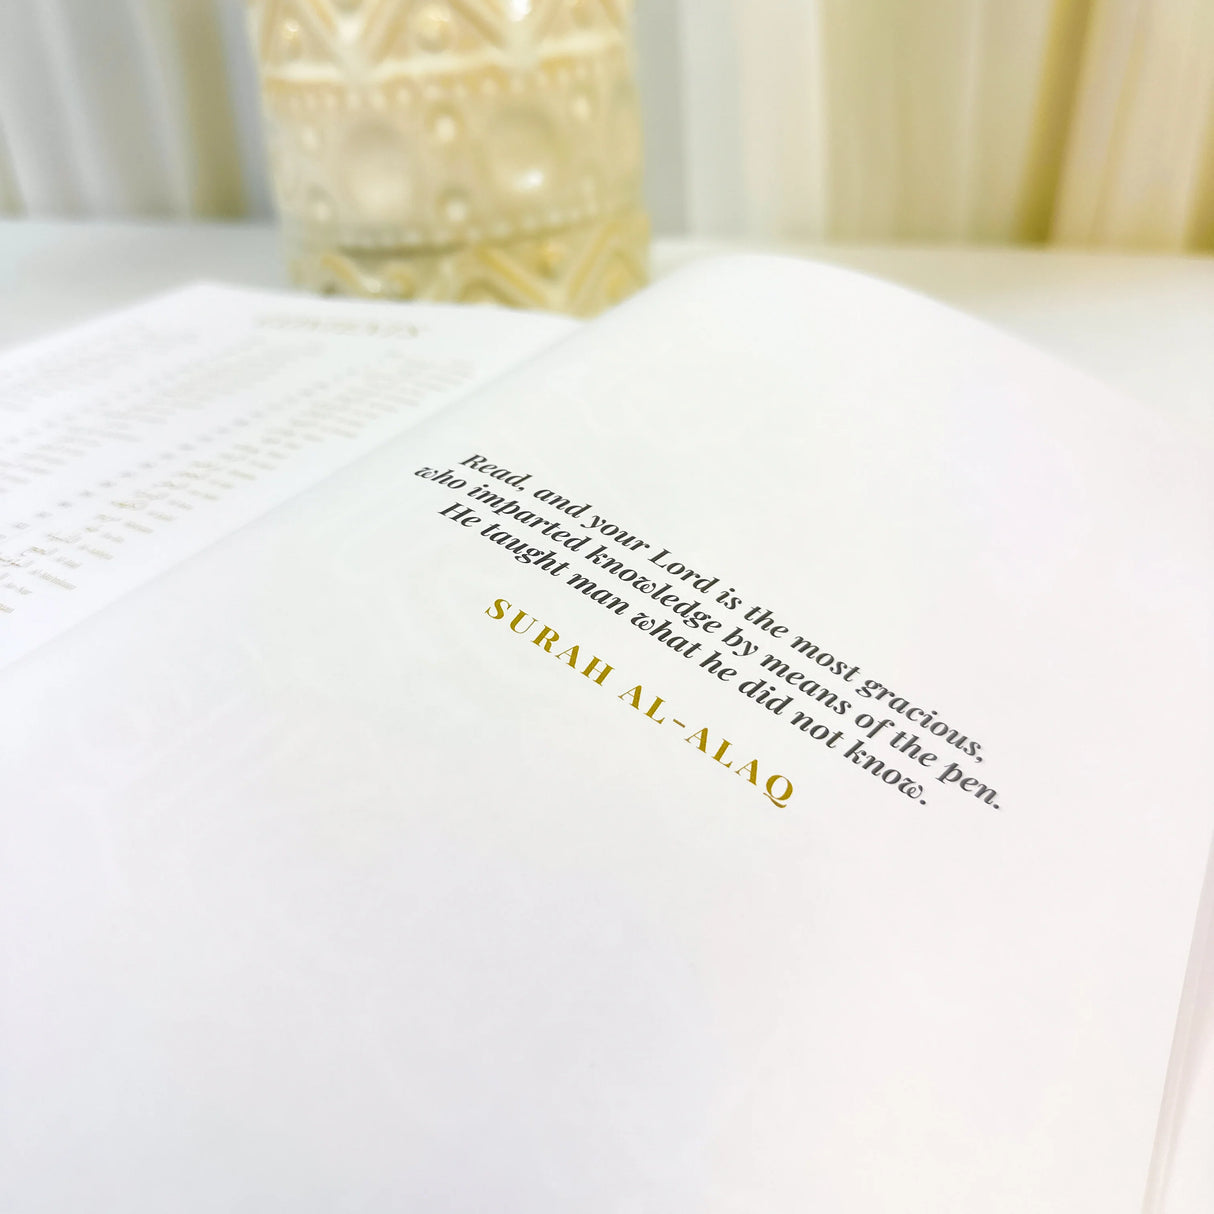 Quran Trace - White (Classic) Edition